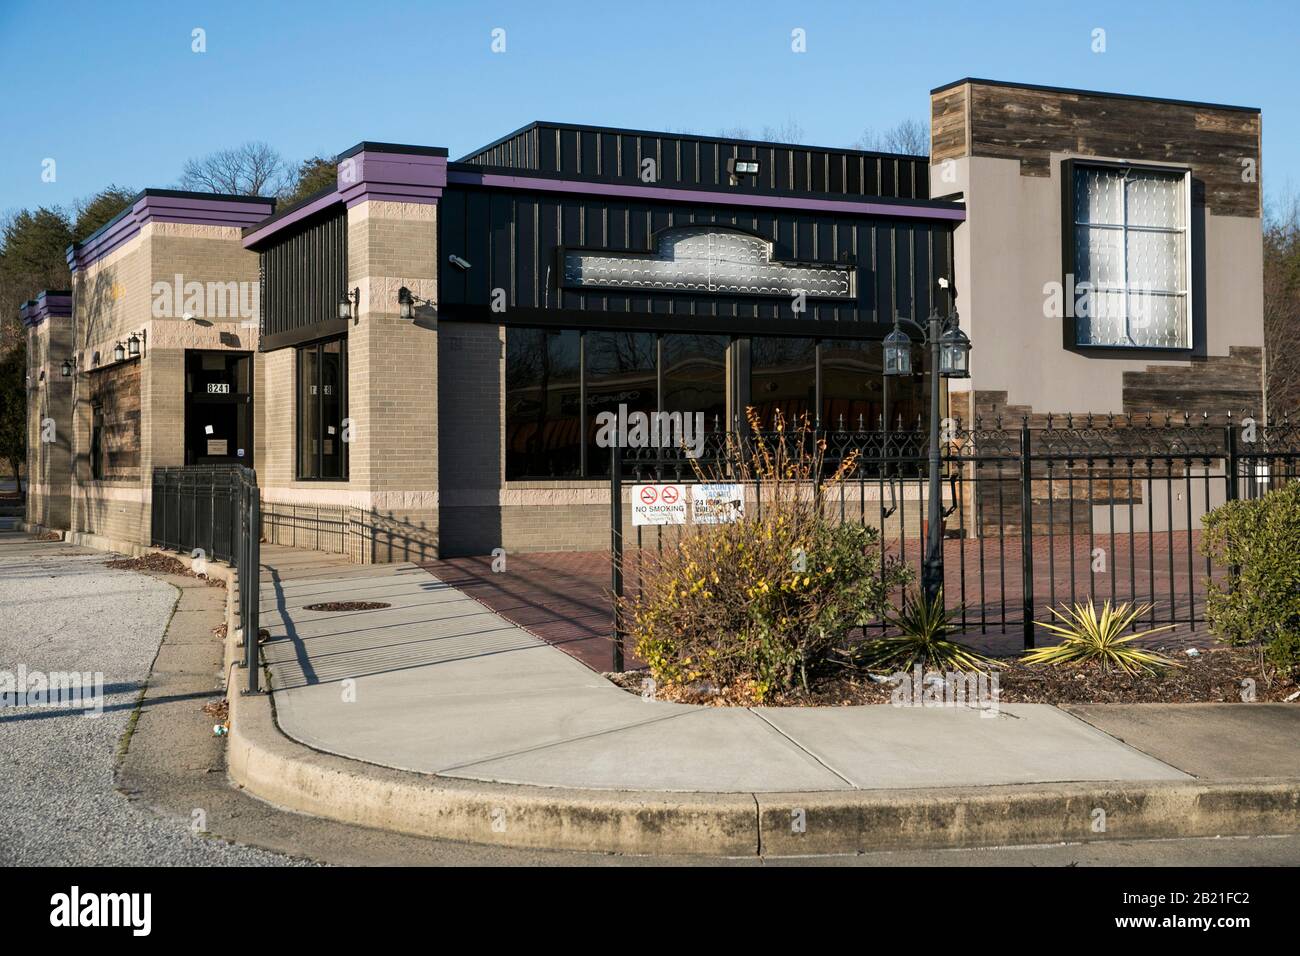 Un ristorante fast food abbandonato a Baltimora, Maryland, il 22 febbraio 2020. Foto Stock